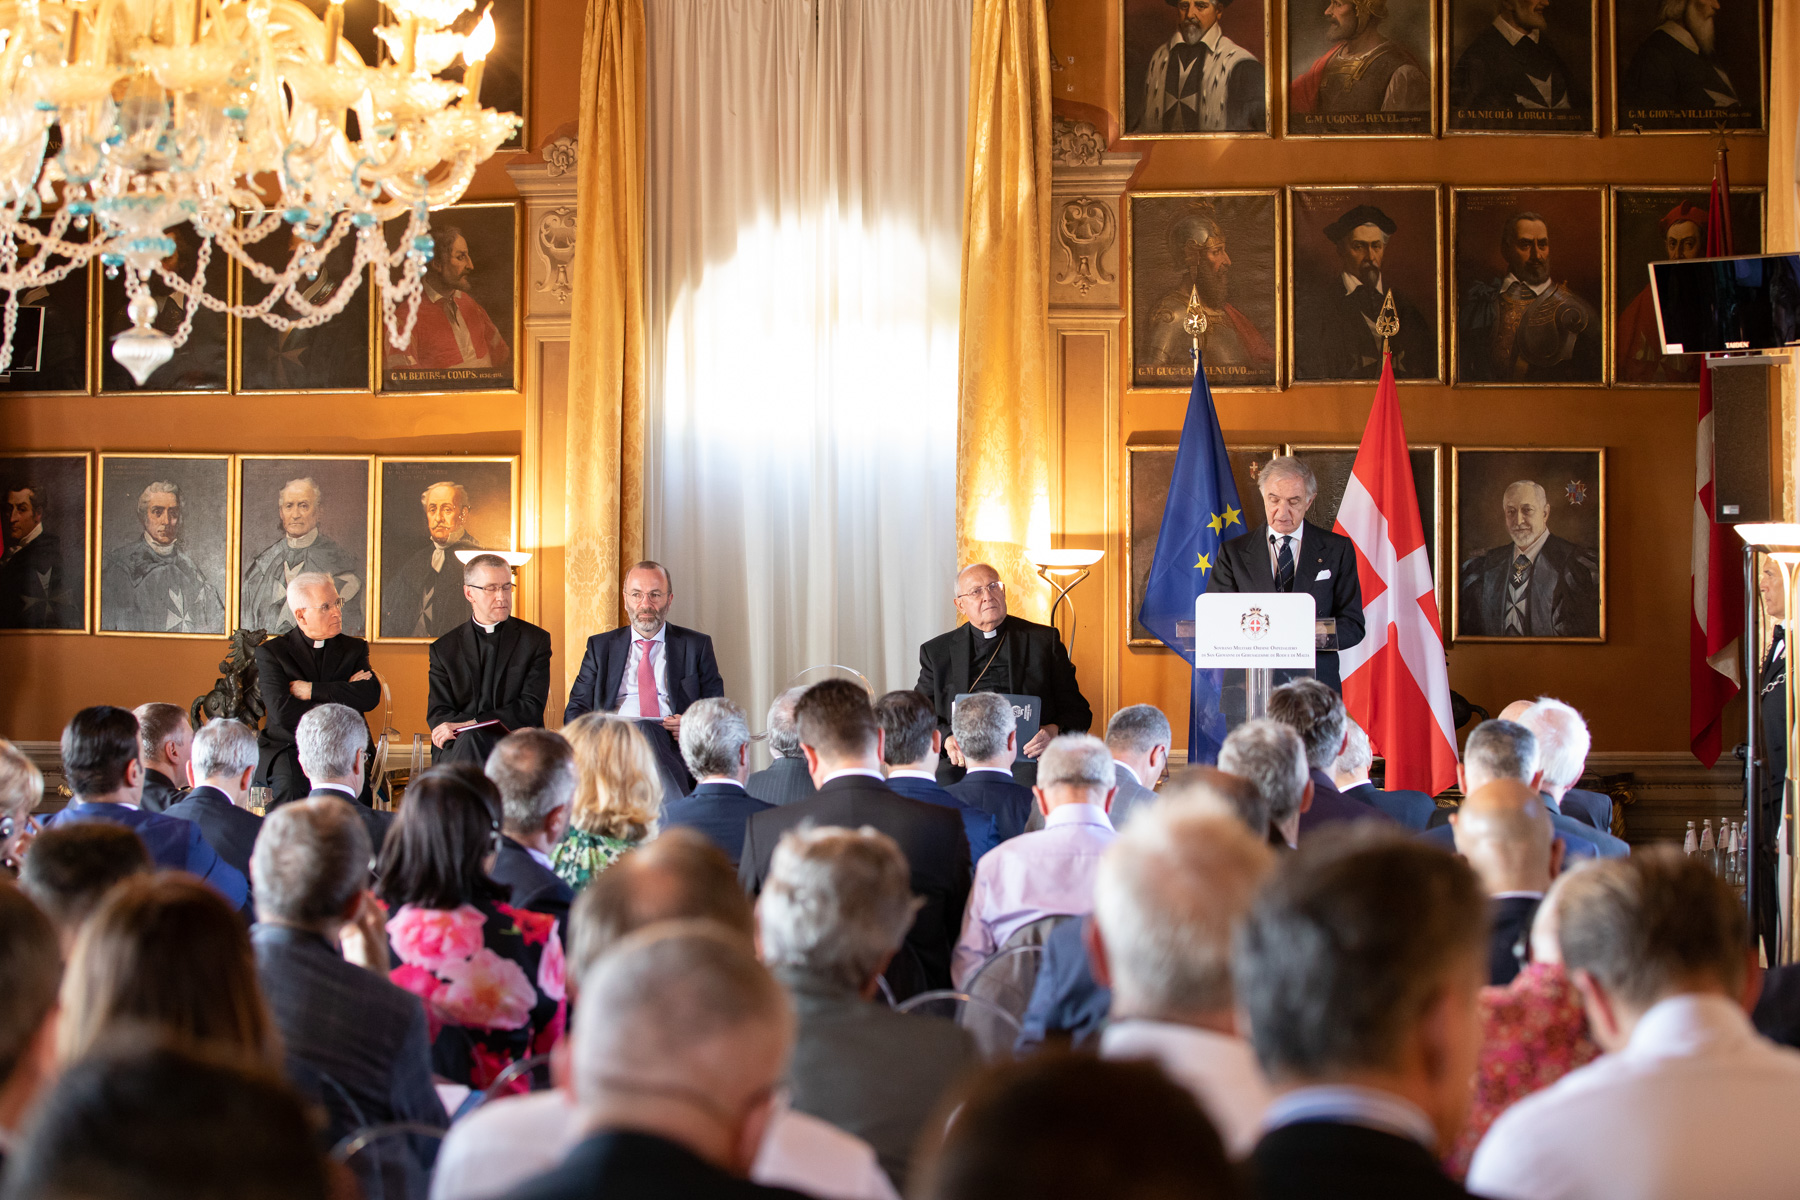 Cristianesimo, Europa e la sua missione nel mondo”: riunione della Delegazione del Partito Popolare Europeo alla Villa Magistrale